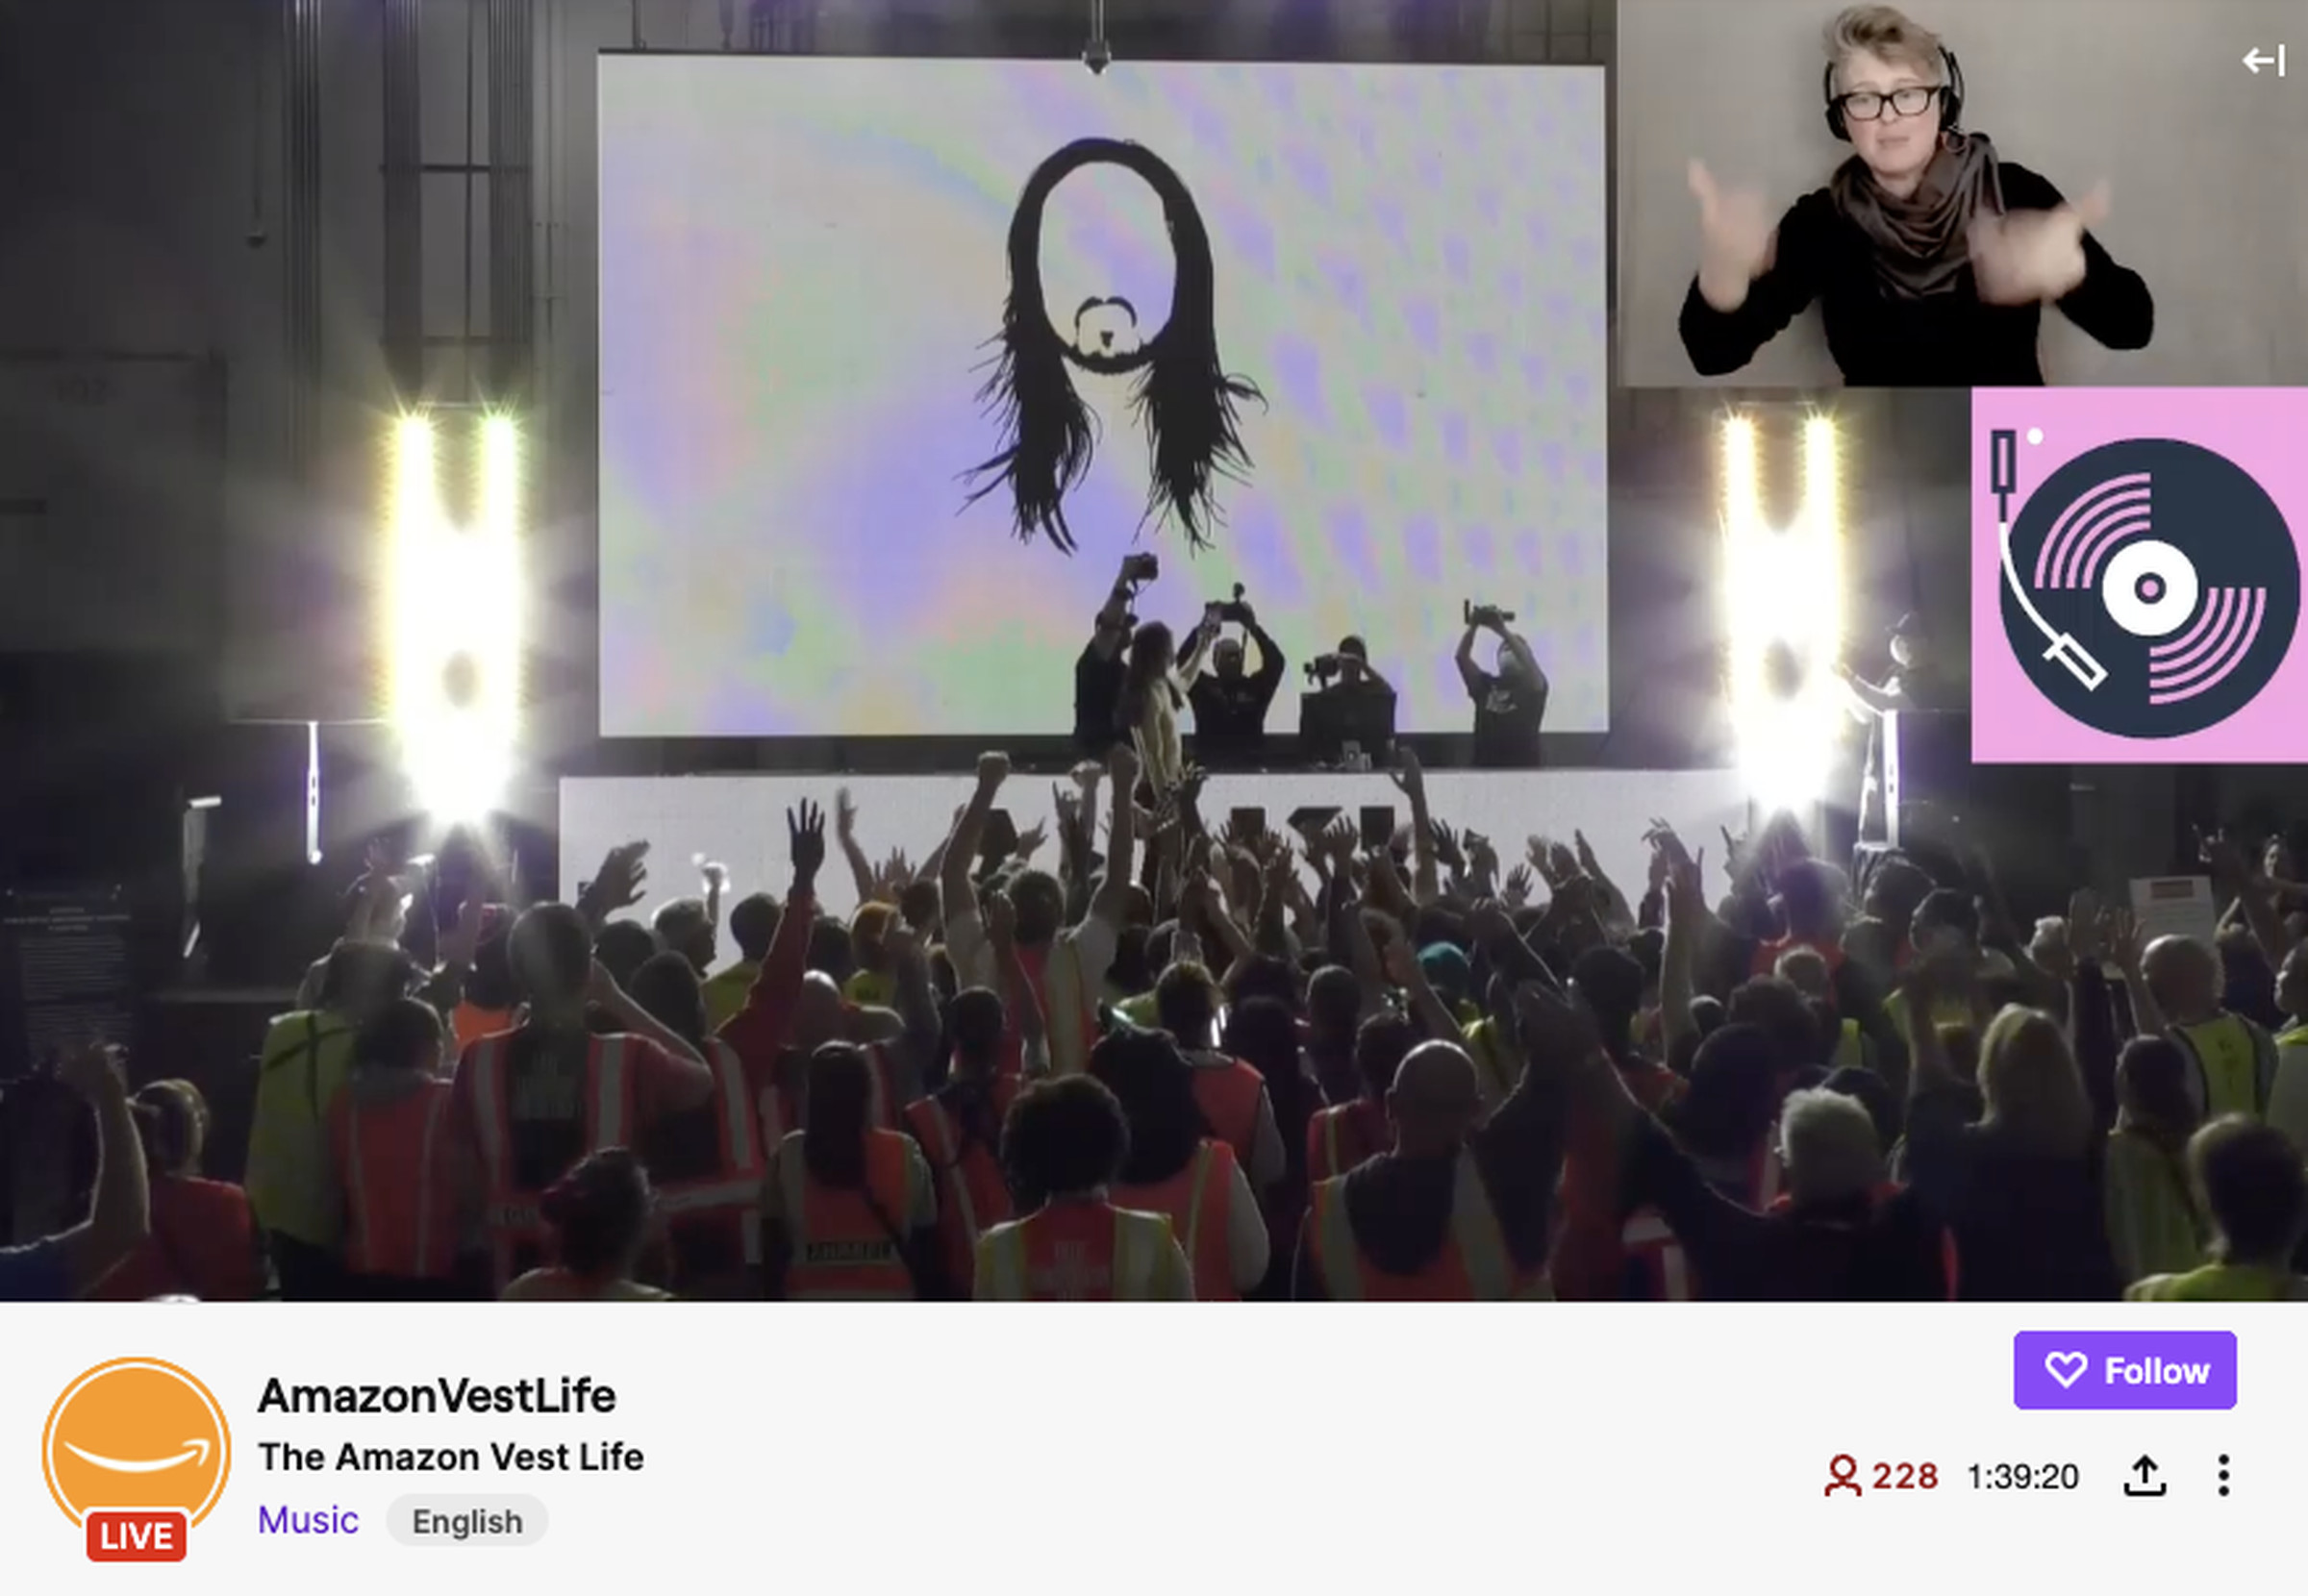 Amazon çalışanları için performans sergileyen Steve Aoki'nin Twitch yayınından bir ekran görüntüsü.